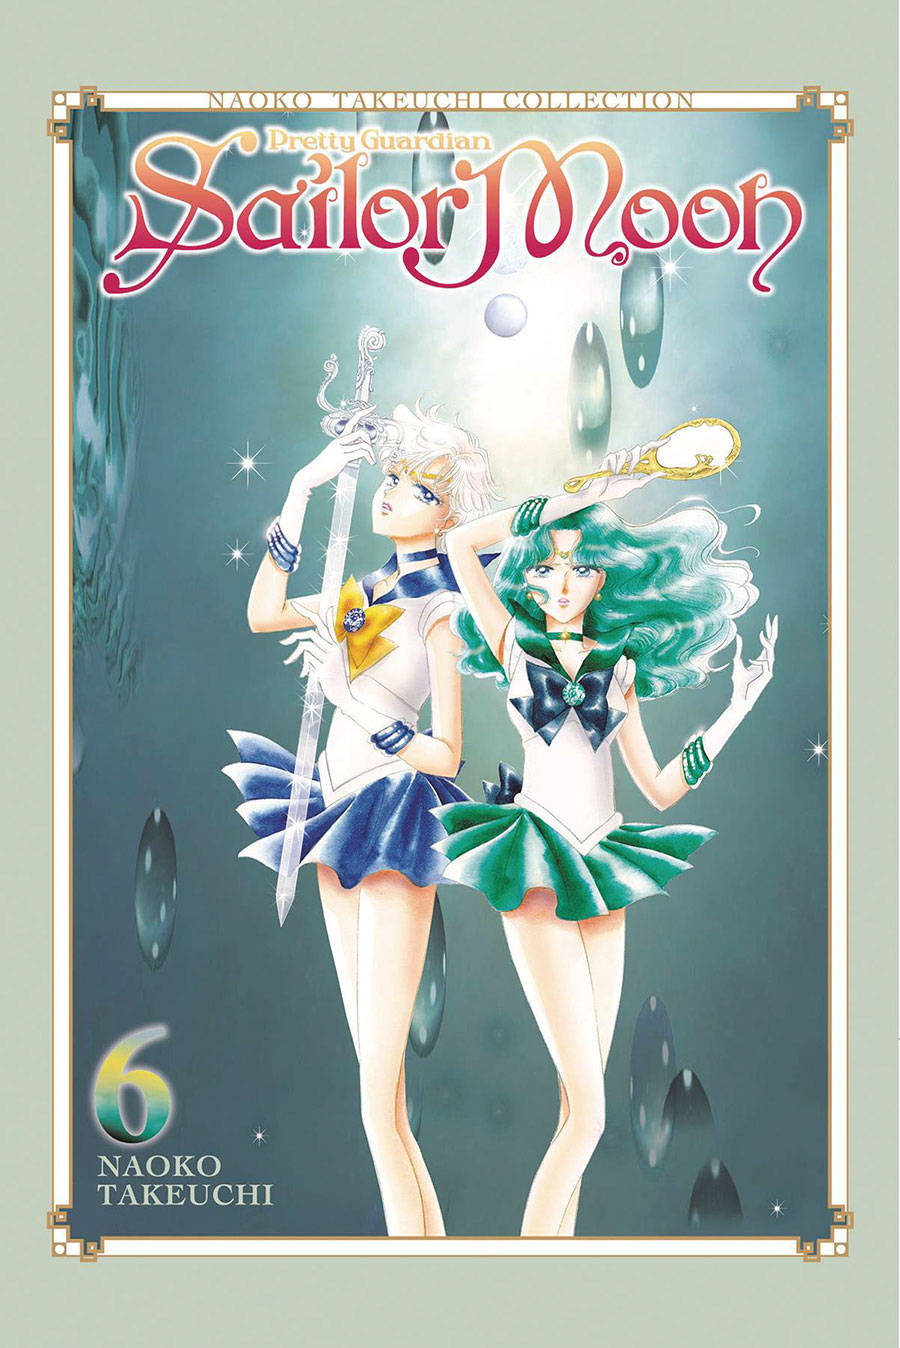 Sailor Moon Naoko Takeuchi Collection Vol 6 GN